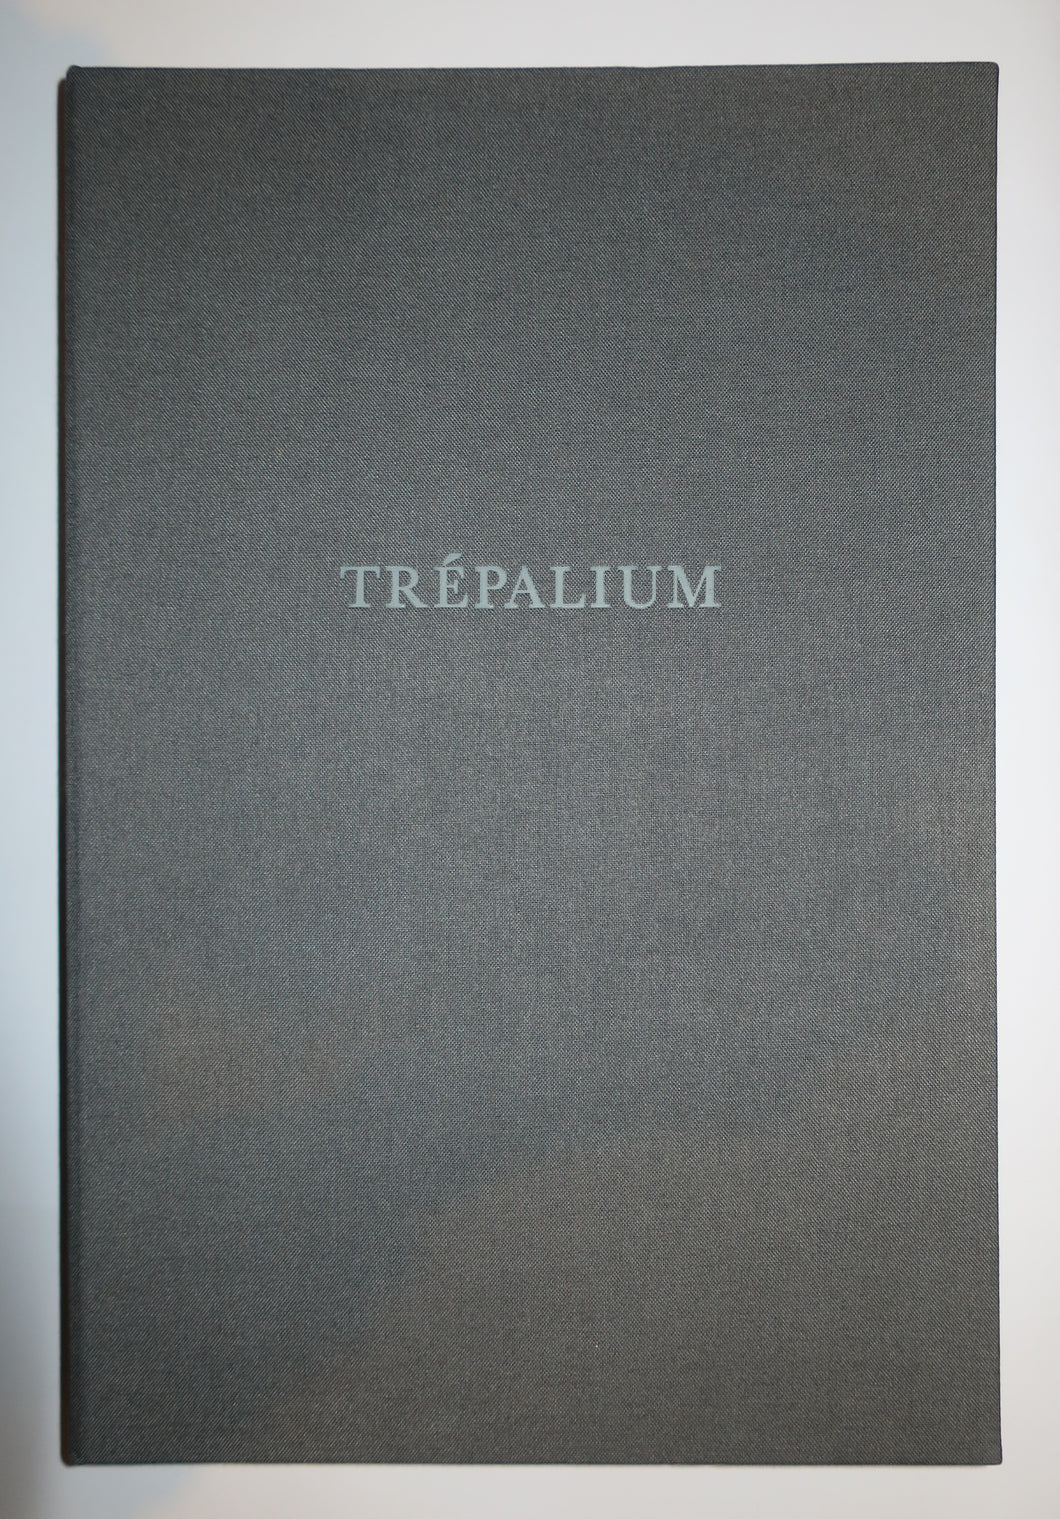 Trépalium, 1998.